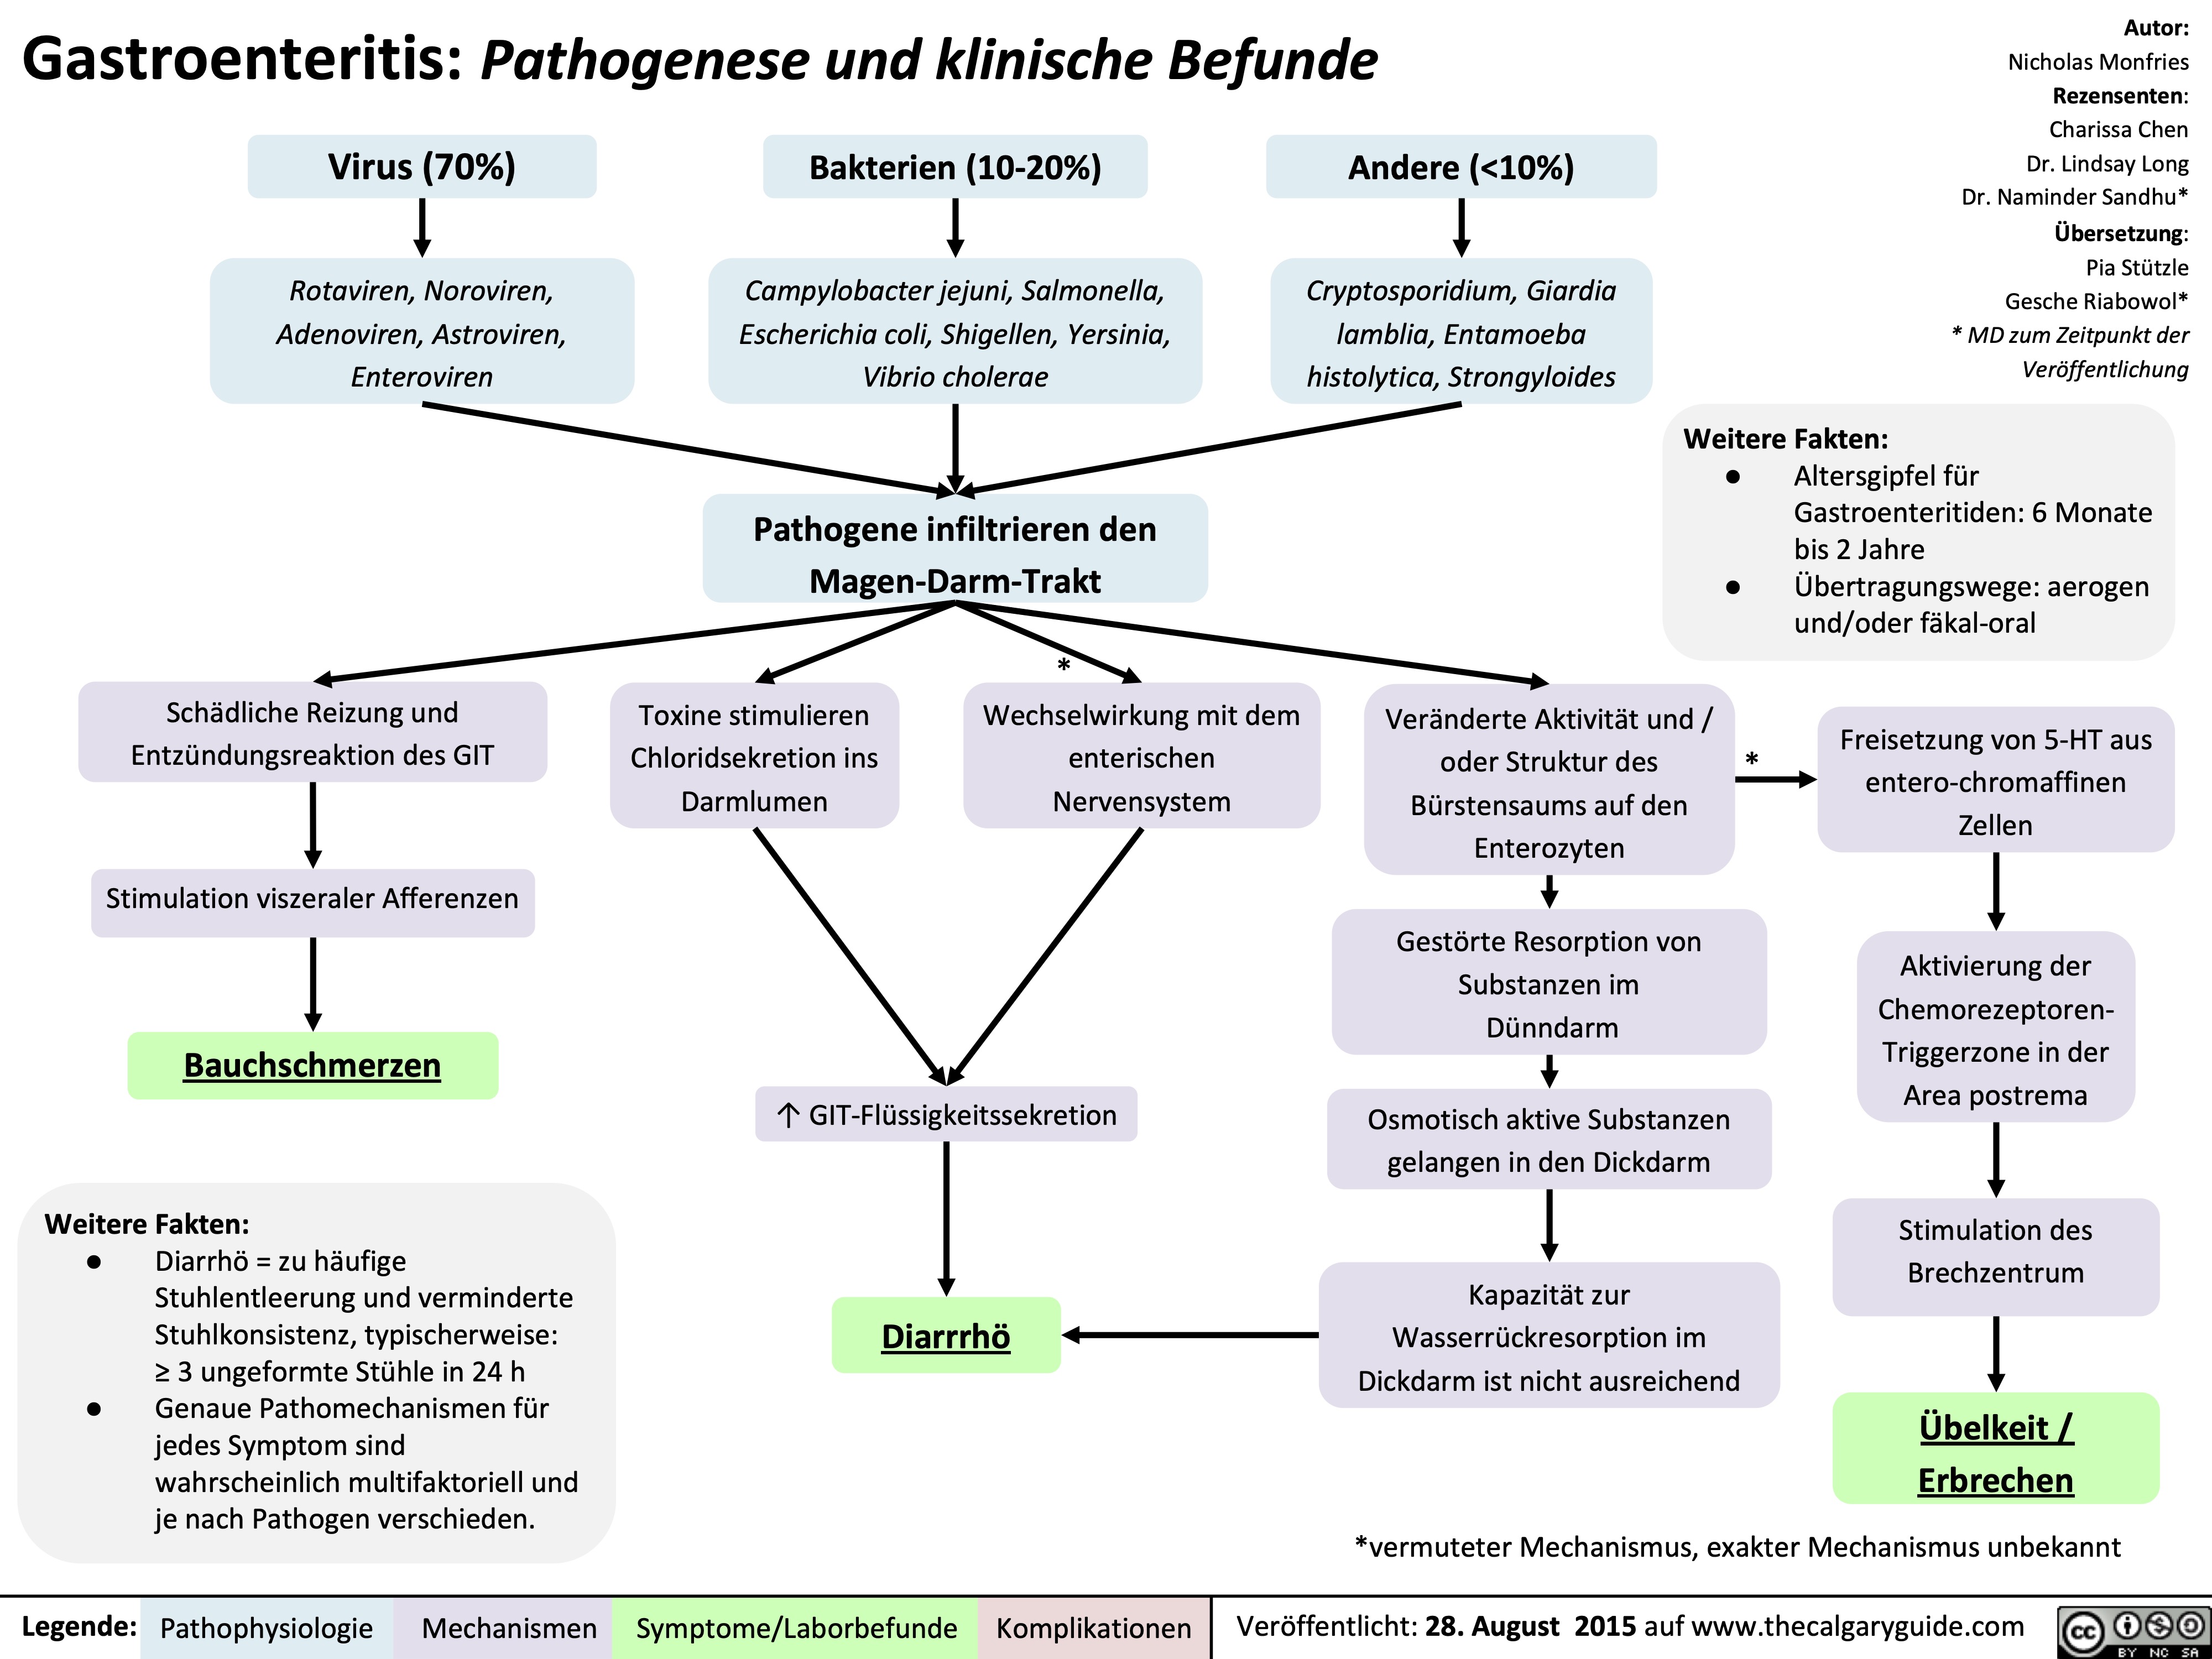 Gastroenteritis: Pathogenese und klinische Befunde